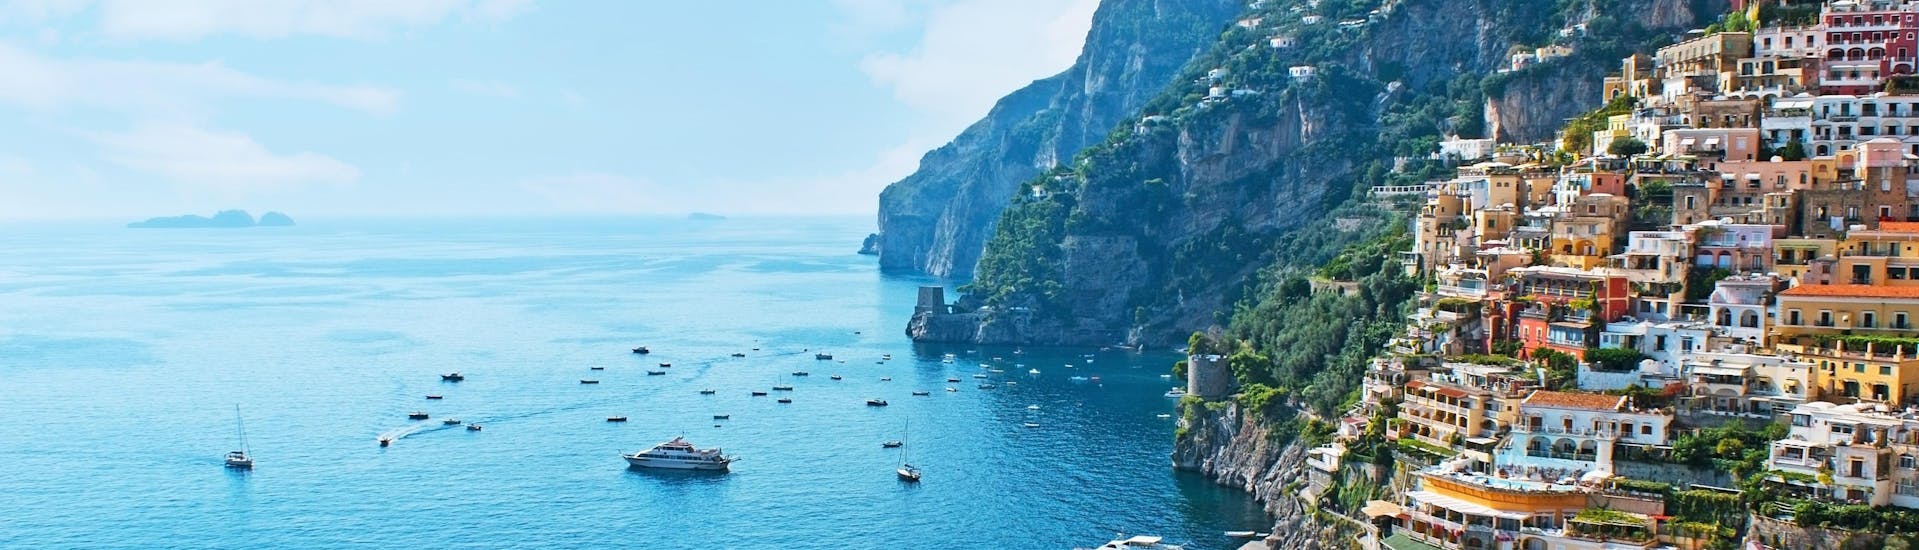 Eine Freundesgruppe macht eine Bootstour in der Urlaubsregion Amalfi.